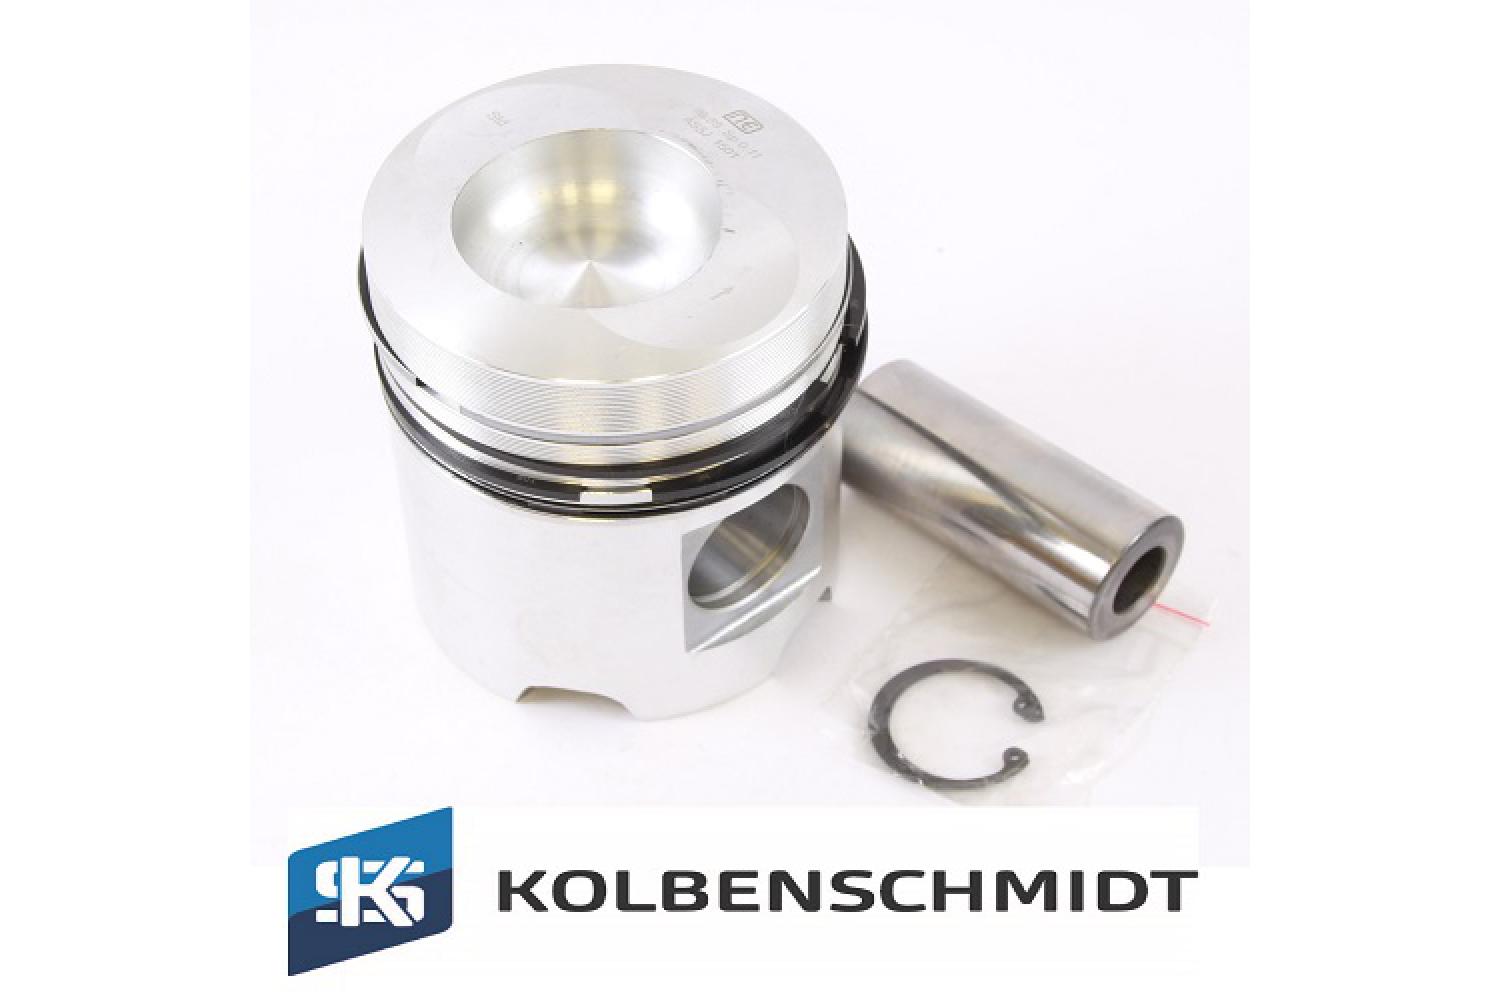 https://dmt-onlineshop.de/images/product_images/popup_images/kolben-deutz-511-zylinder-d-100-mm-kolbenschmidt-ks-3-ring-238270-0.jpg